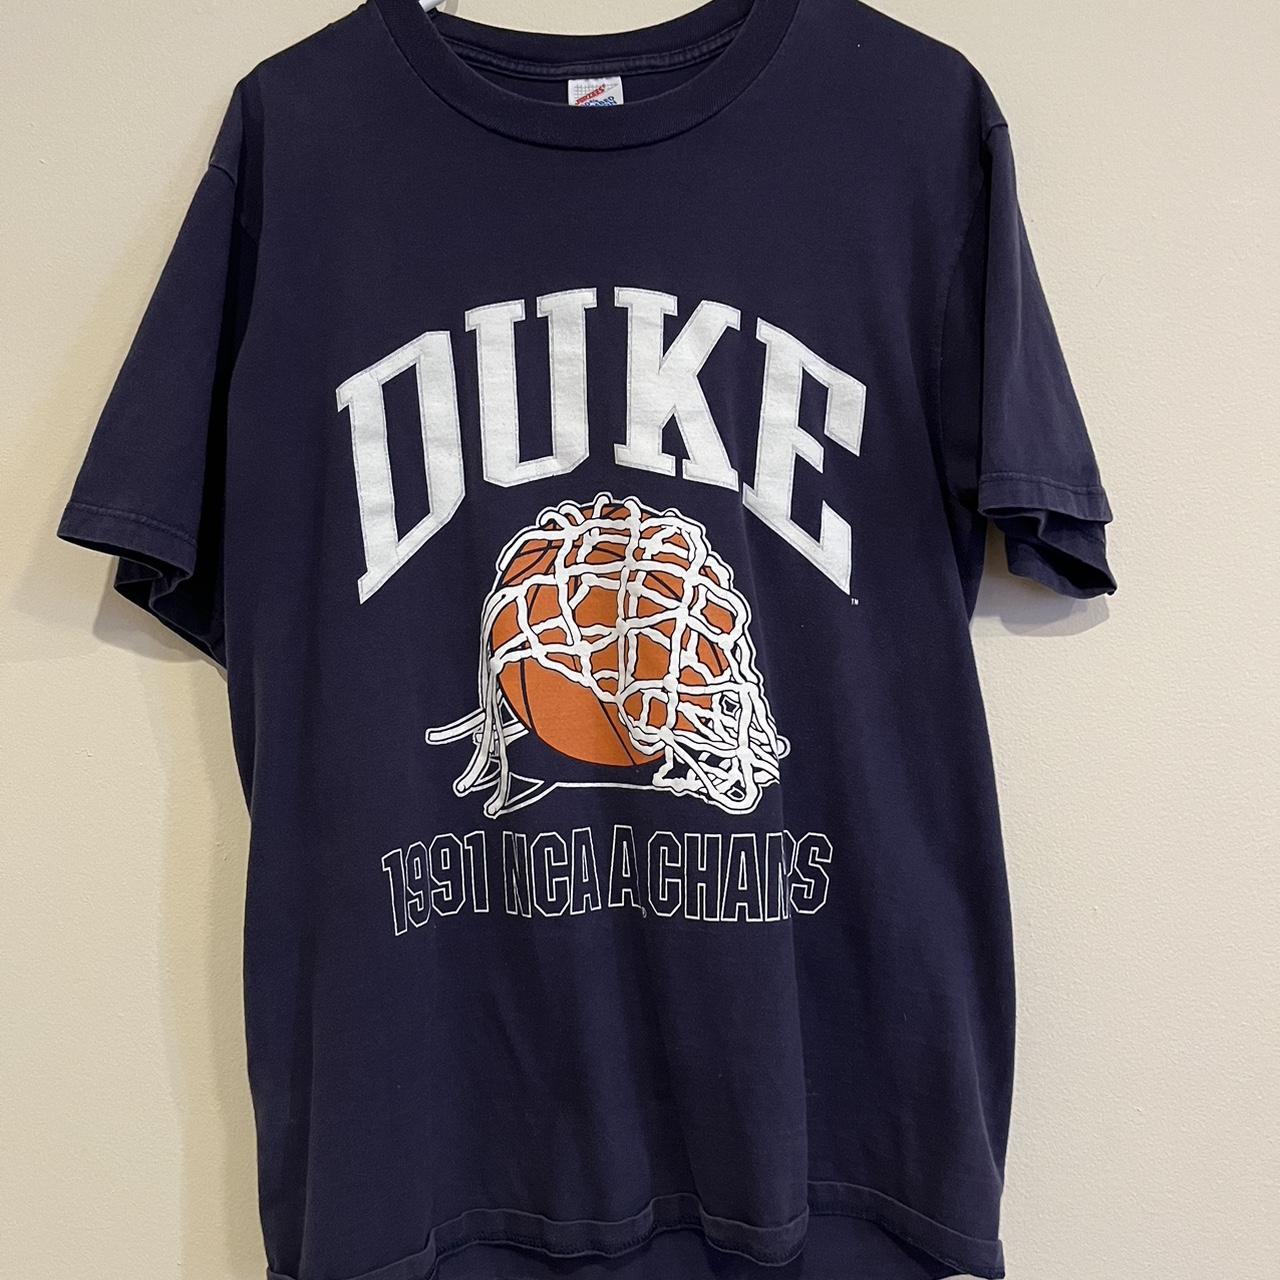 Vintage 90s DUKE UNIVERSITY basketball jersey - Depop